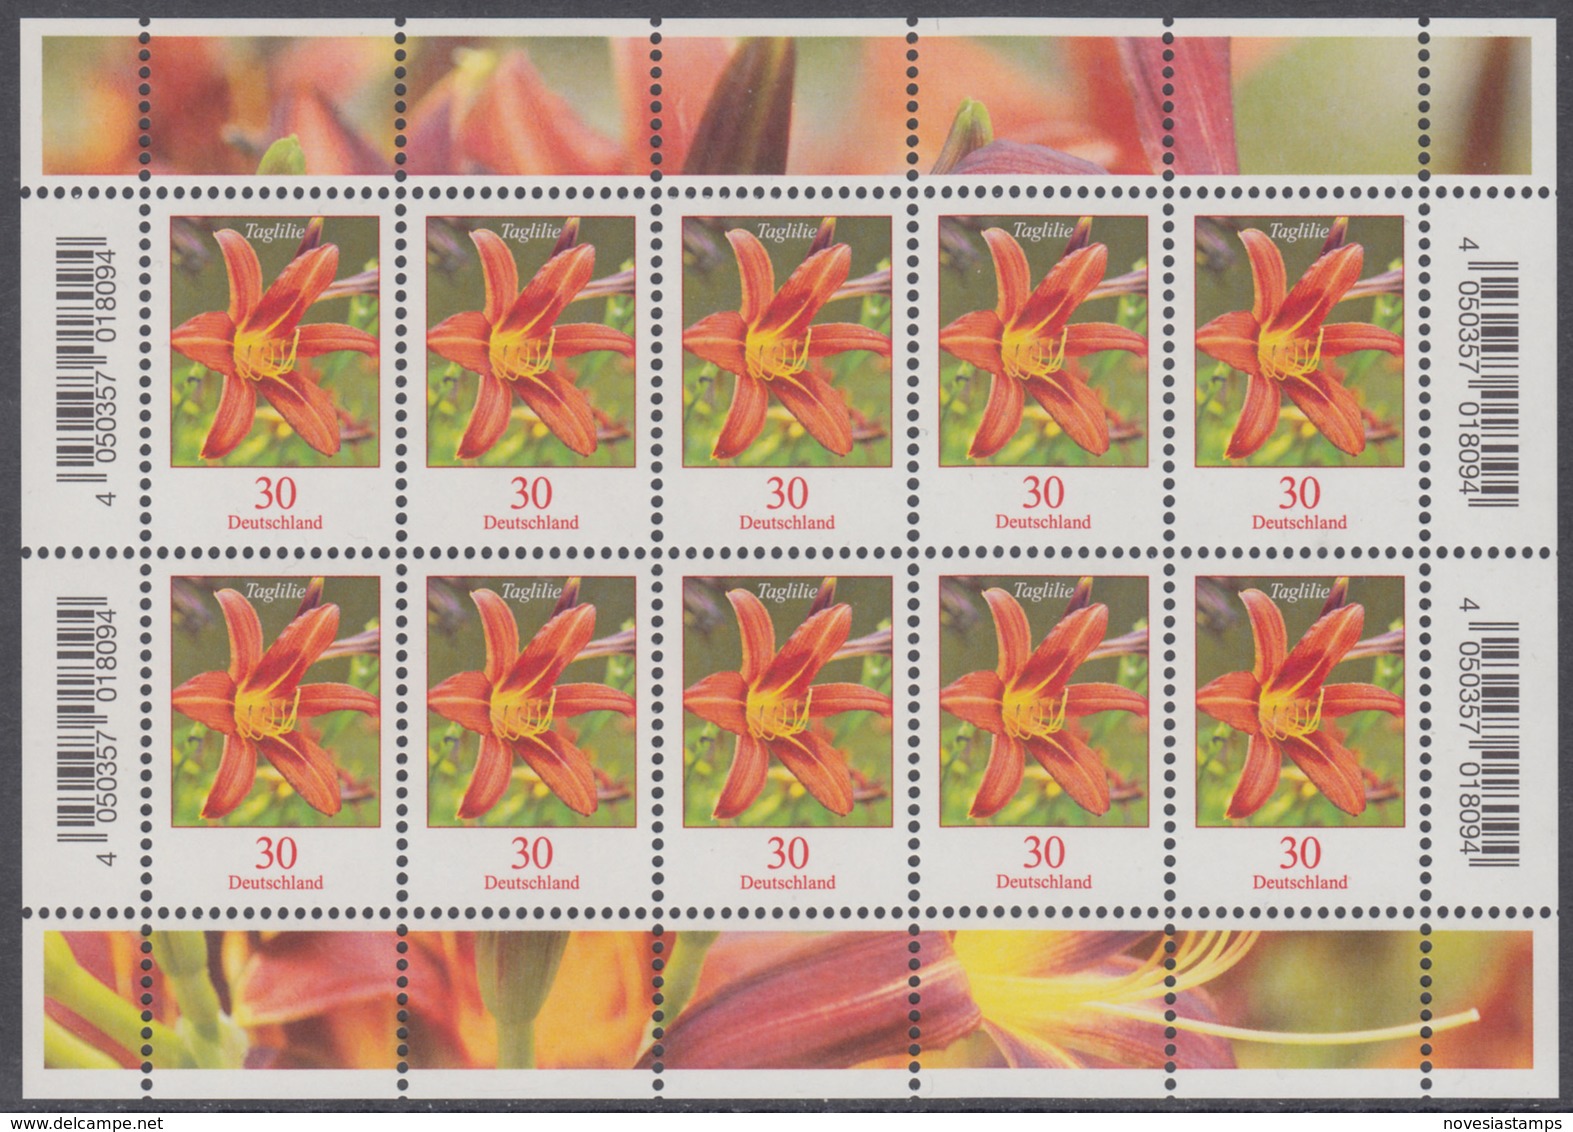 !a! GERMANY 2020 Mi. 3509 MNH SHEET(10) - Flowers: Daylily - Ongebruikt